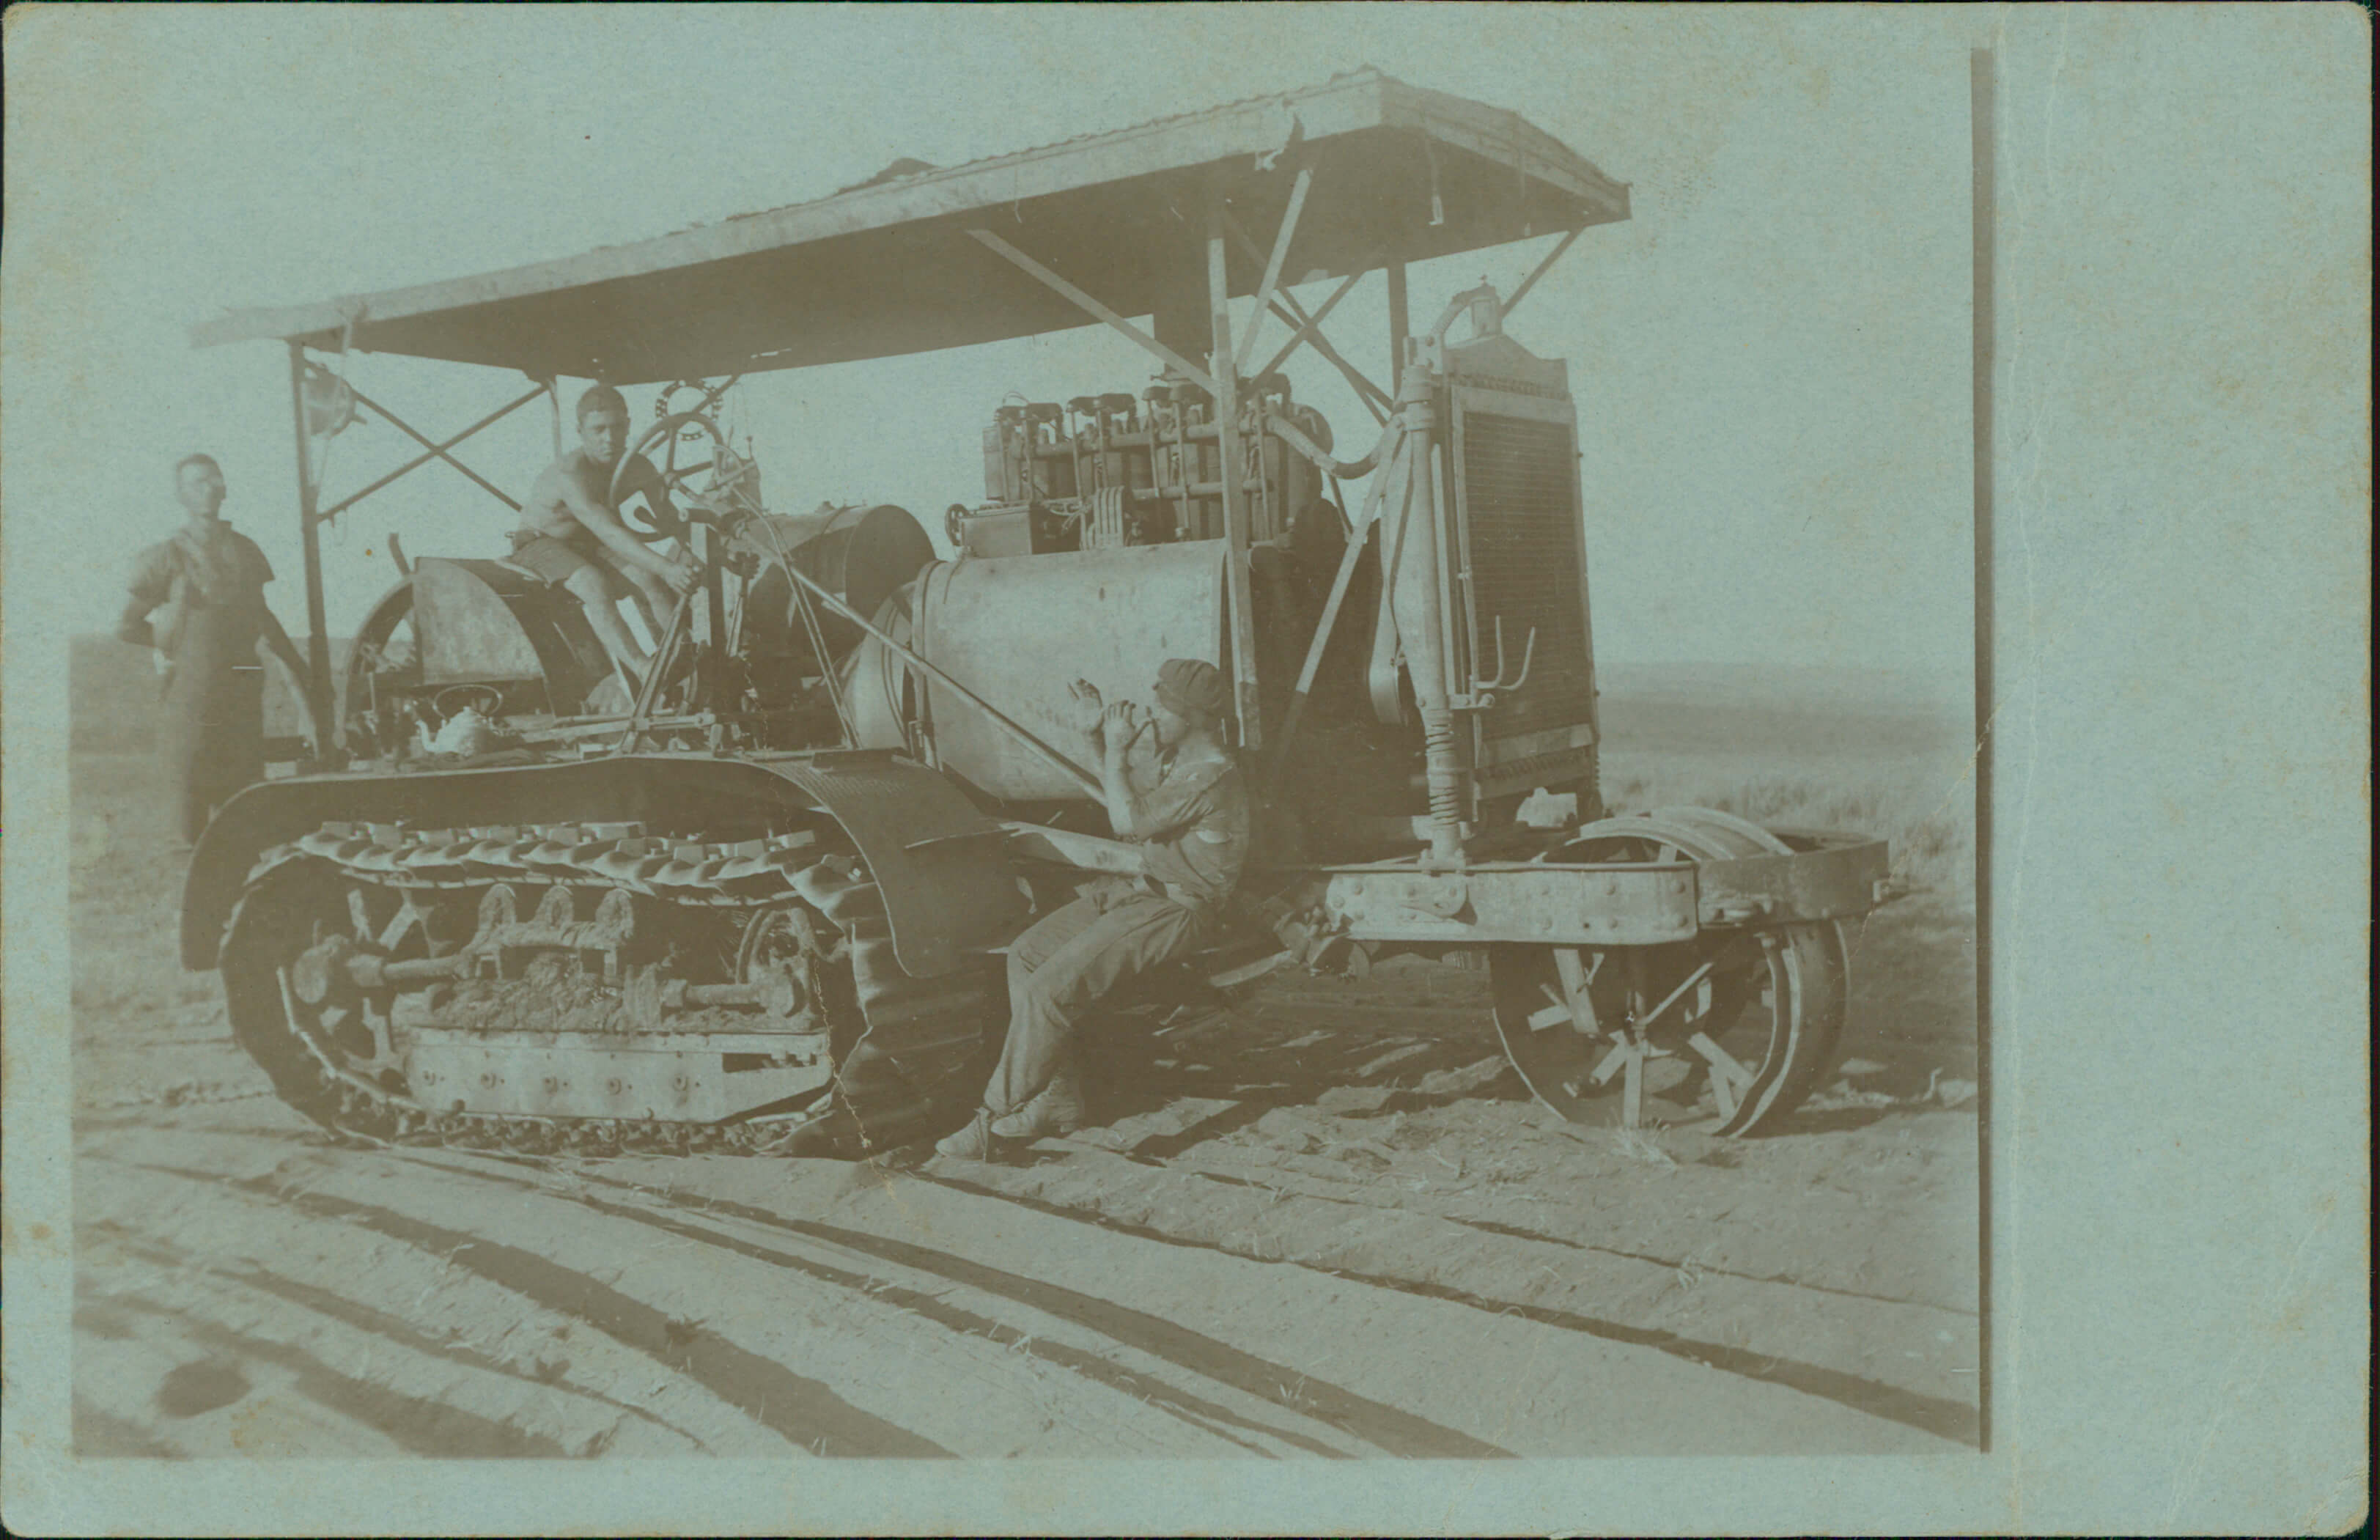 דוד הירשהורן (משמאל) וחברים חורשים את השדות של רעננה, שנות ה-30